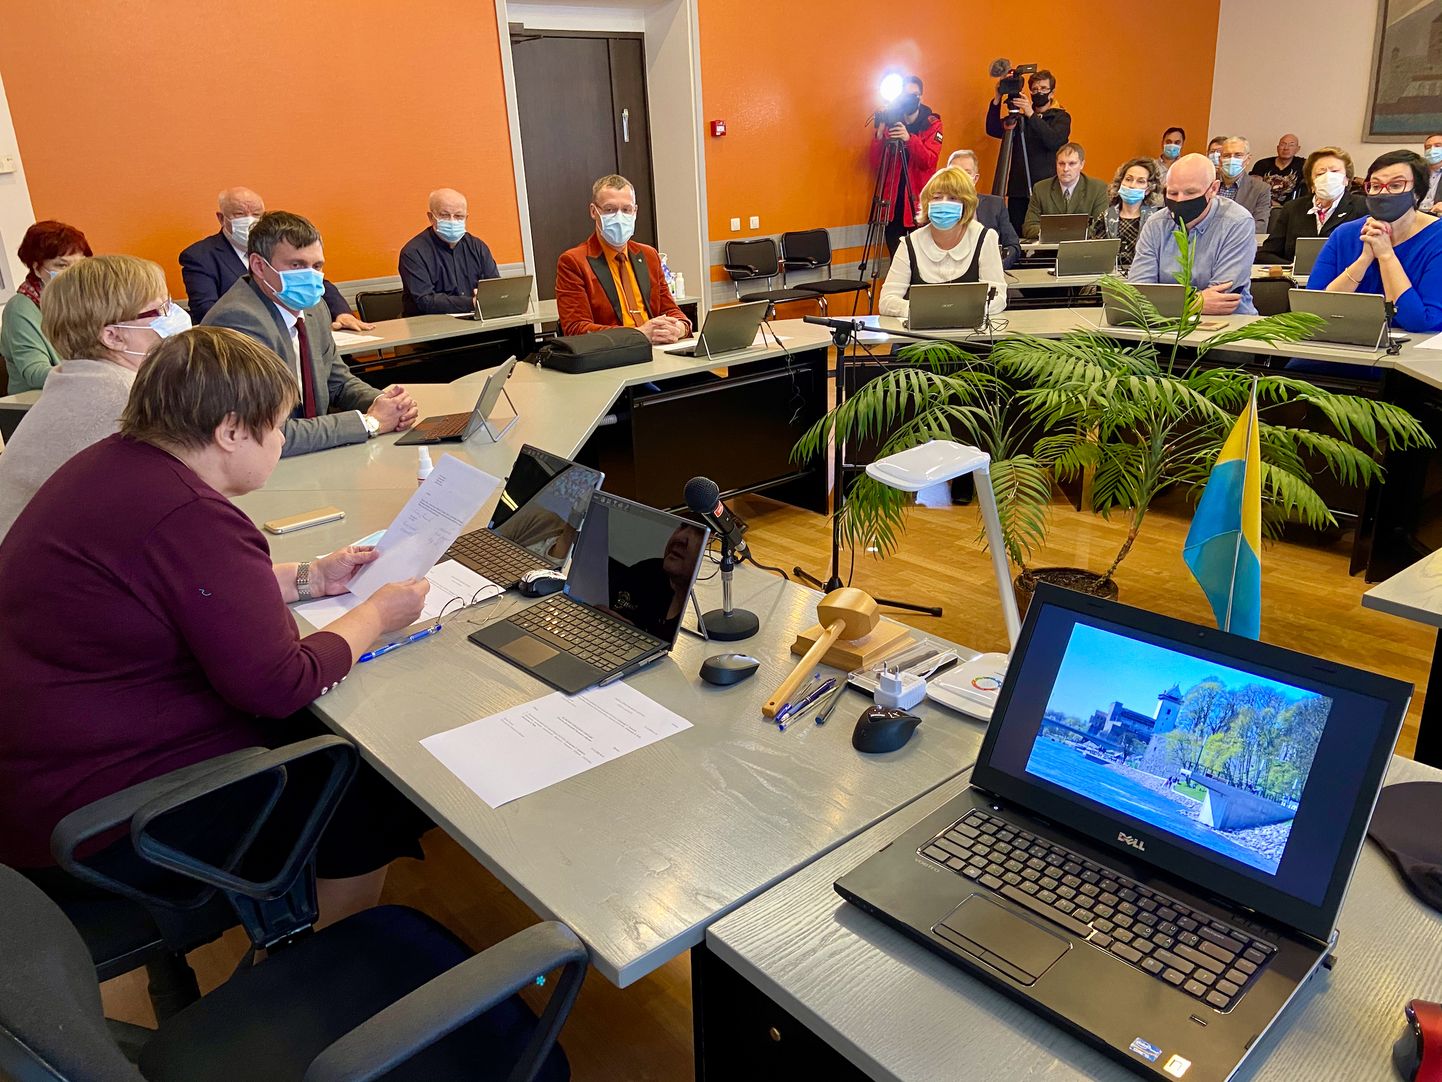 Narva volikogu istung toimub 30. detsembril suletud režiimis. Muu hulgas on kavas linnapea ja volikogu esimehe valimine ning volikogu mõlema aseesimehe umbusaldamine.